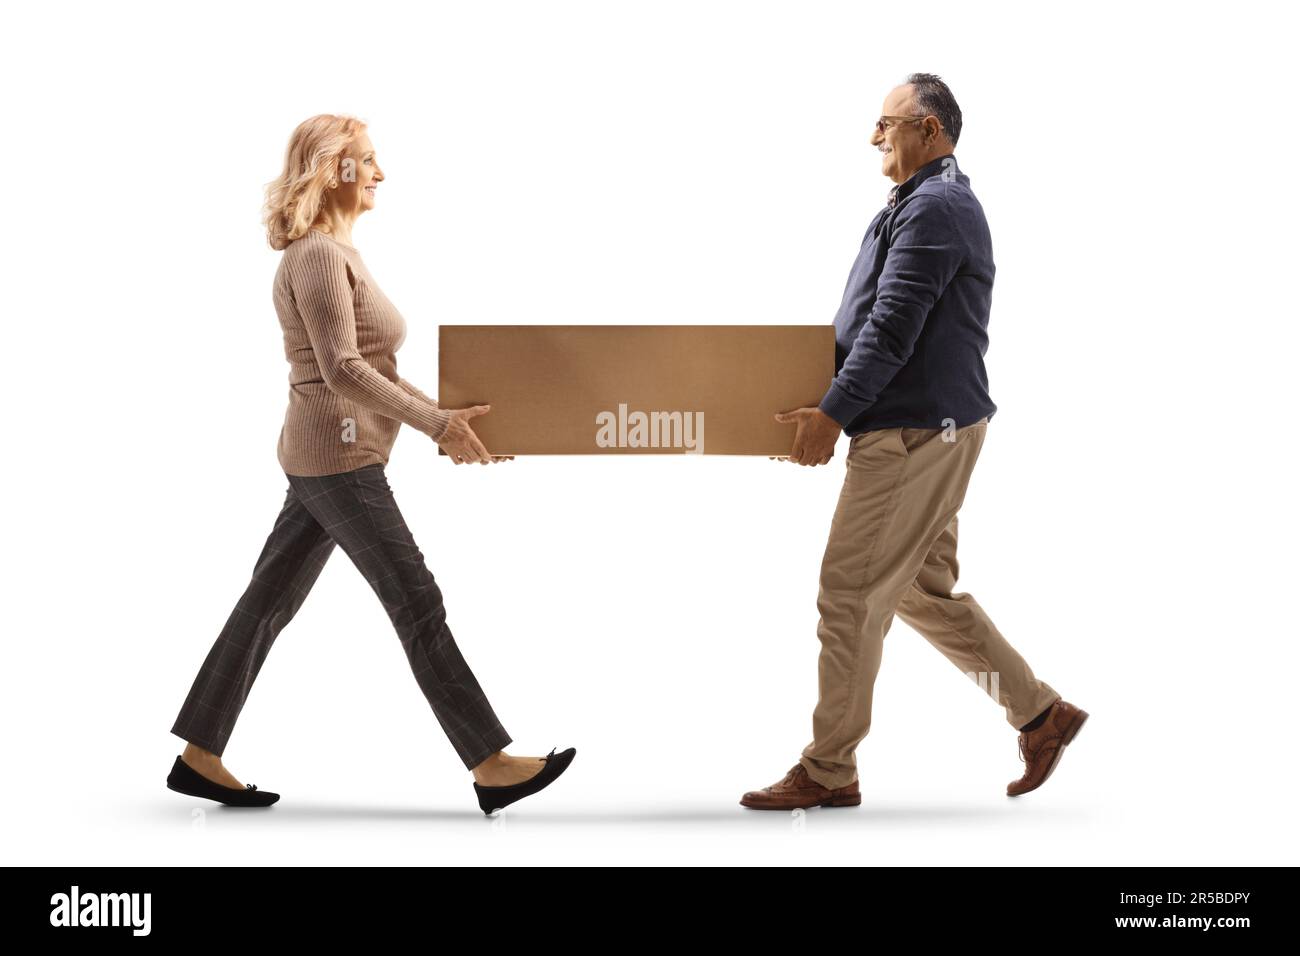 Prise de vue sur toute la longueur d'un homme et d'une femme matures portant une boîte en carton isolée sur fond blanc Banque D'Images